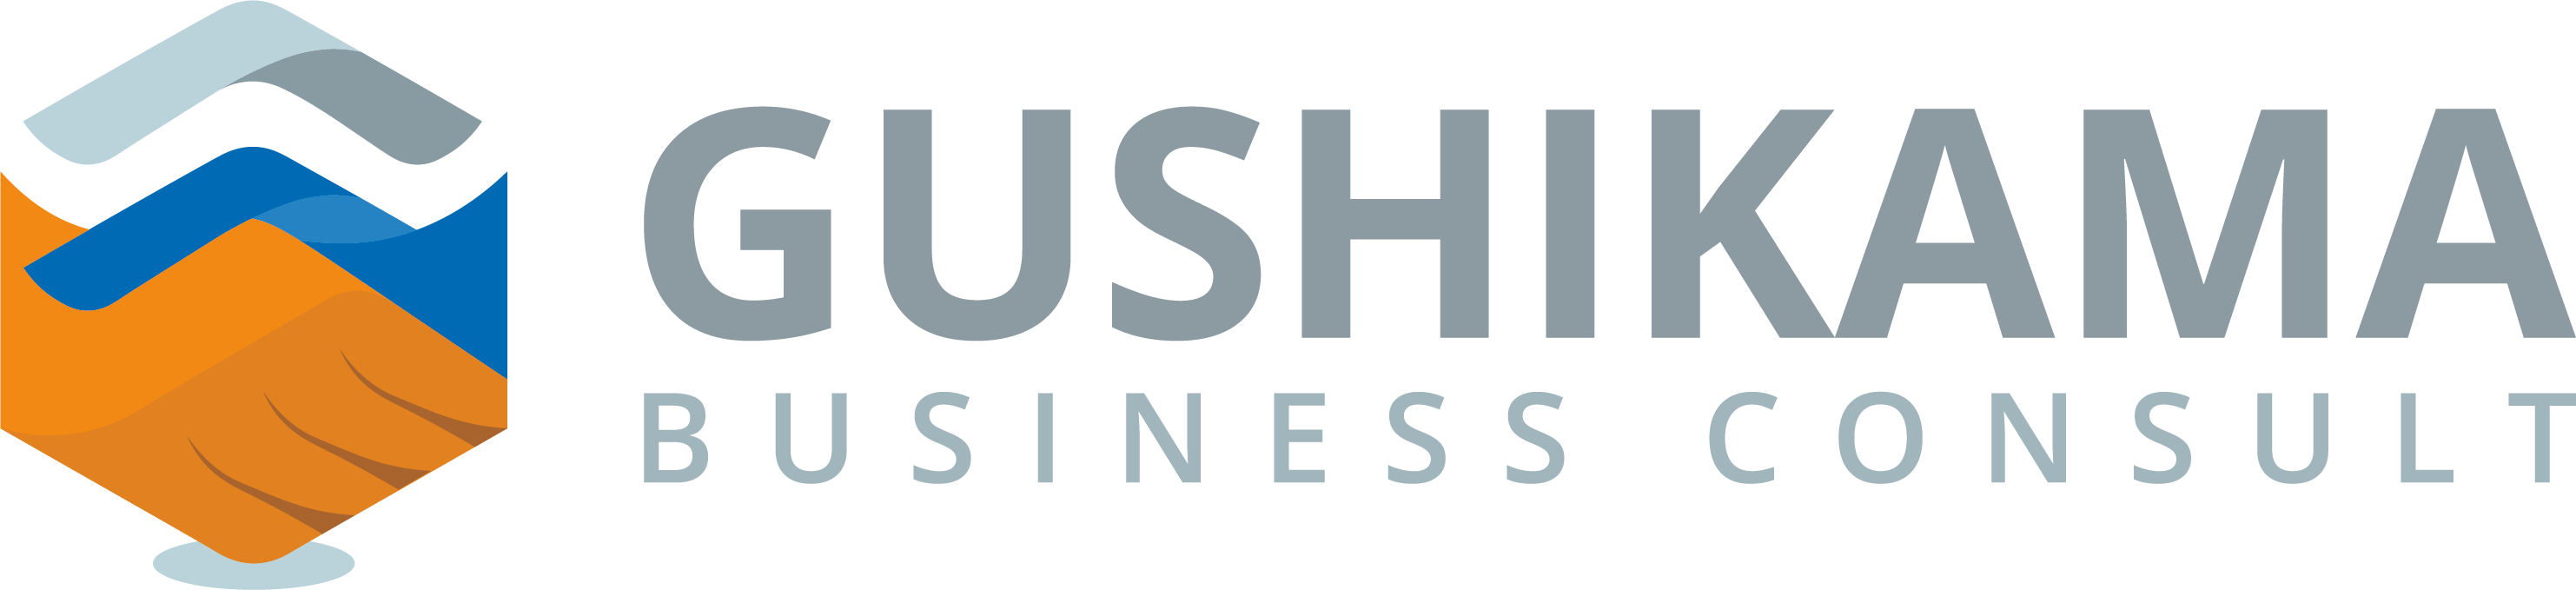 Gushikama Business Consult